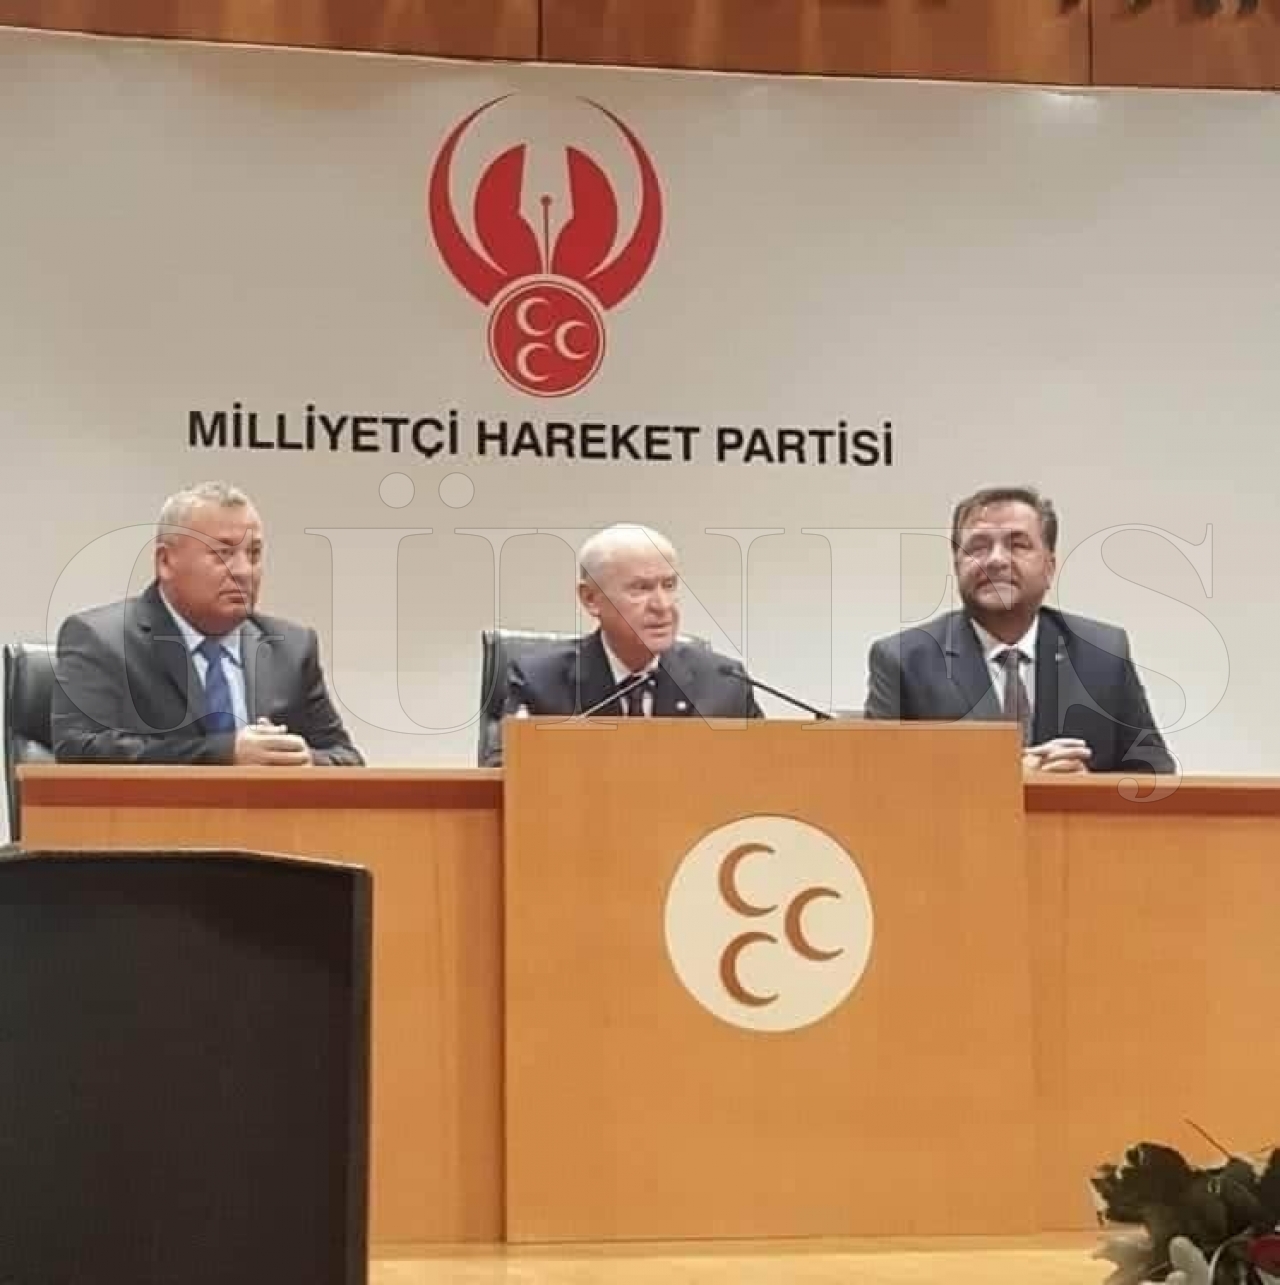 Köksal Yılmaz MHP Ordu il başkanlığından istifa etti Güneş Gazetesi